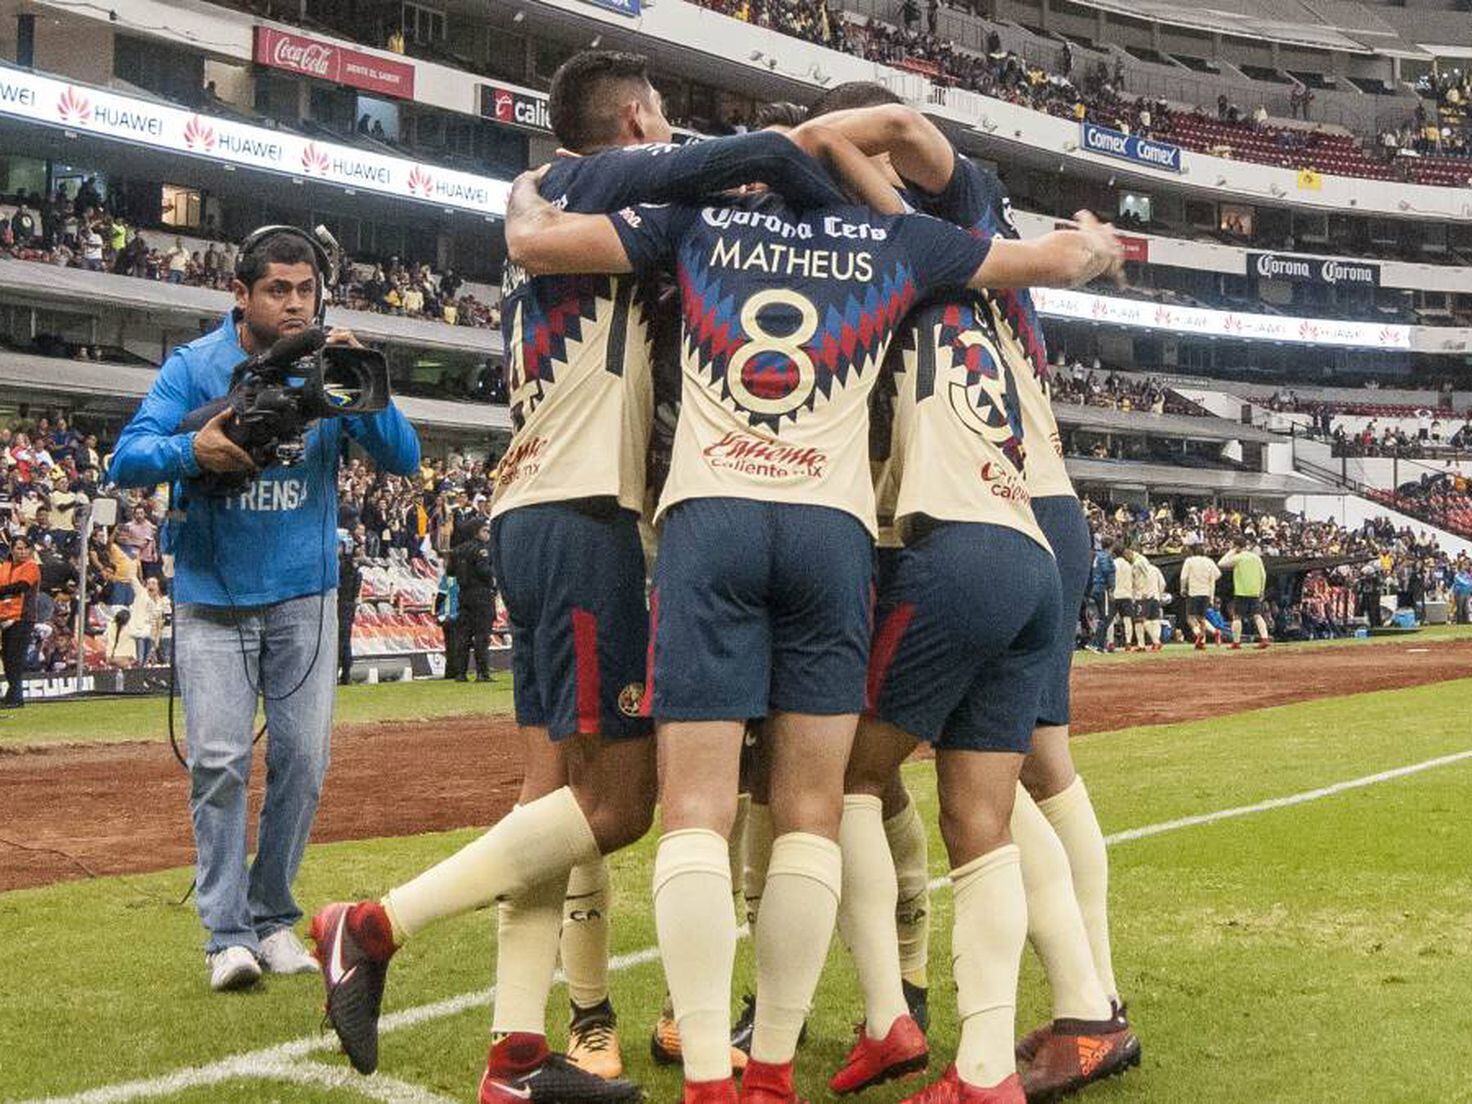 Club América: ¿El mejor equipo mexicano en los últimos 10 años?